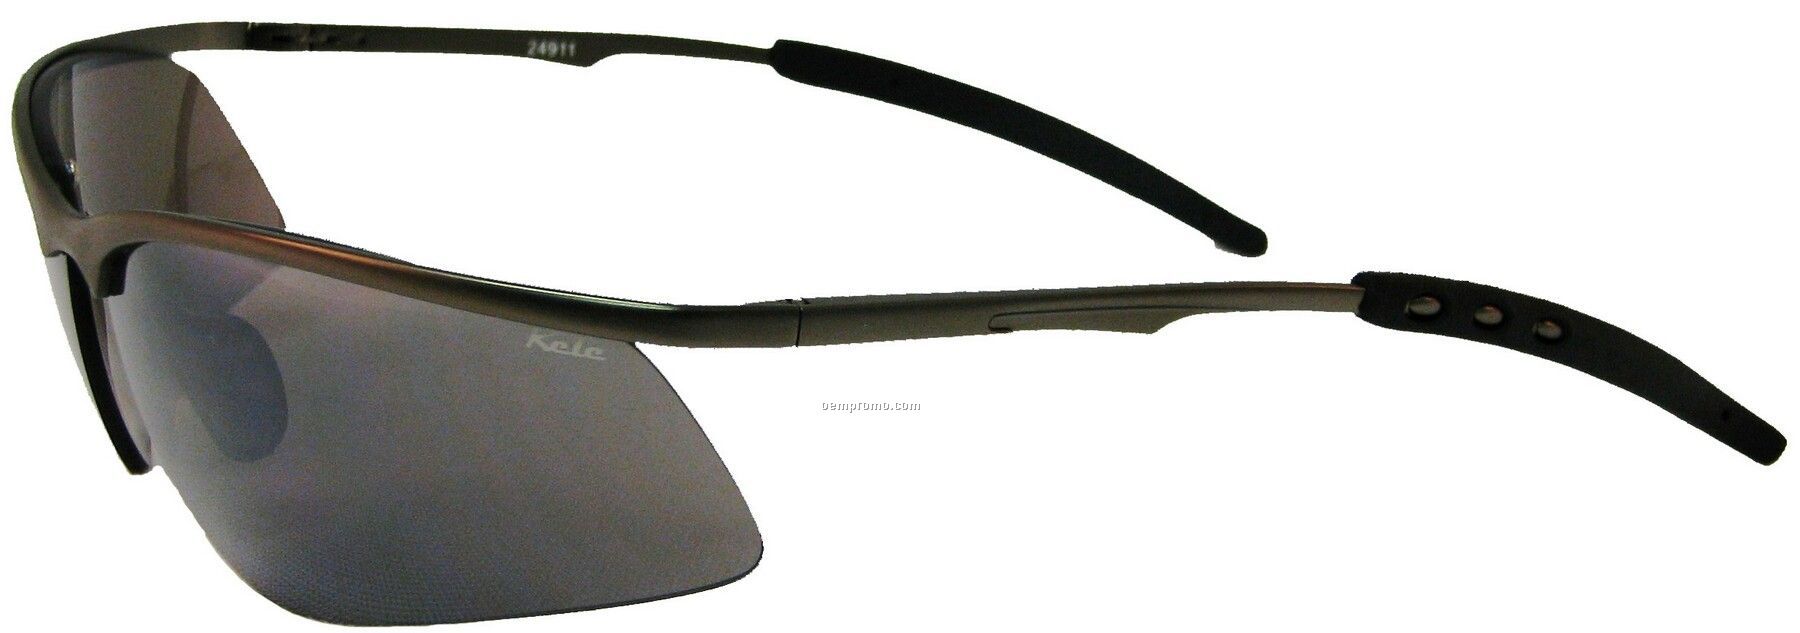 Bolt Sunglasses - Gray Lens W/Gunmetal Frame